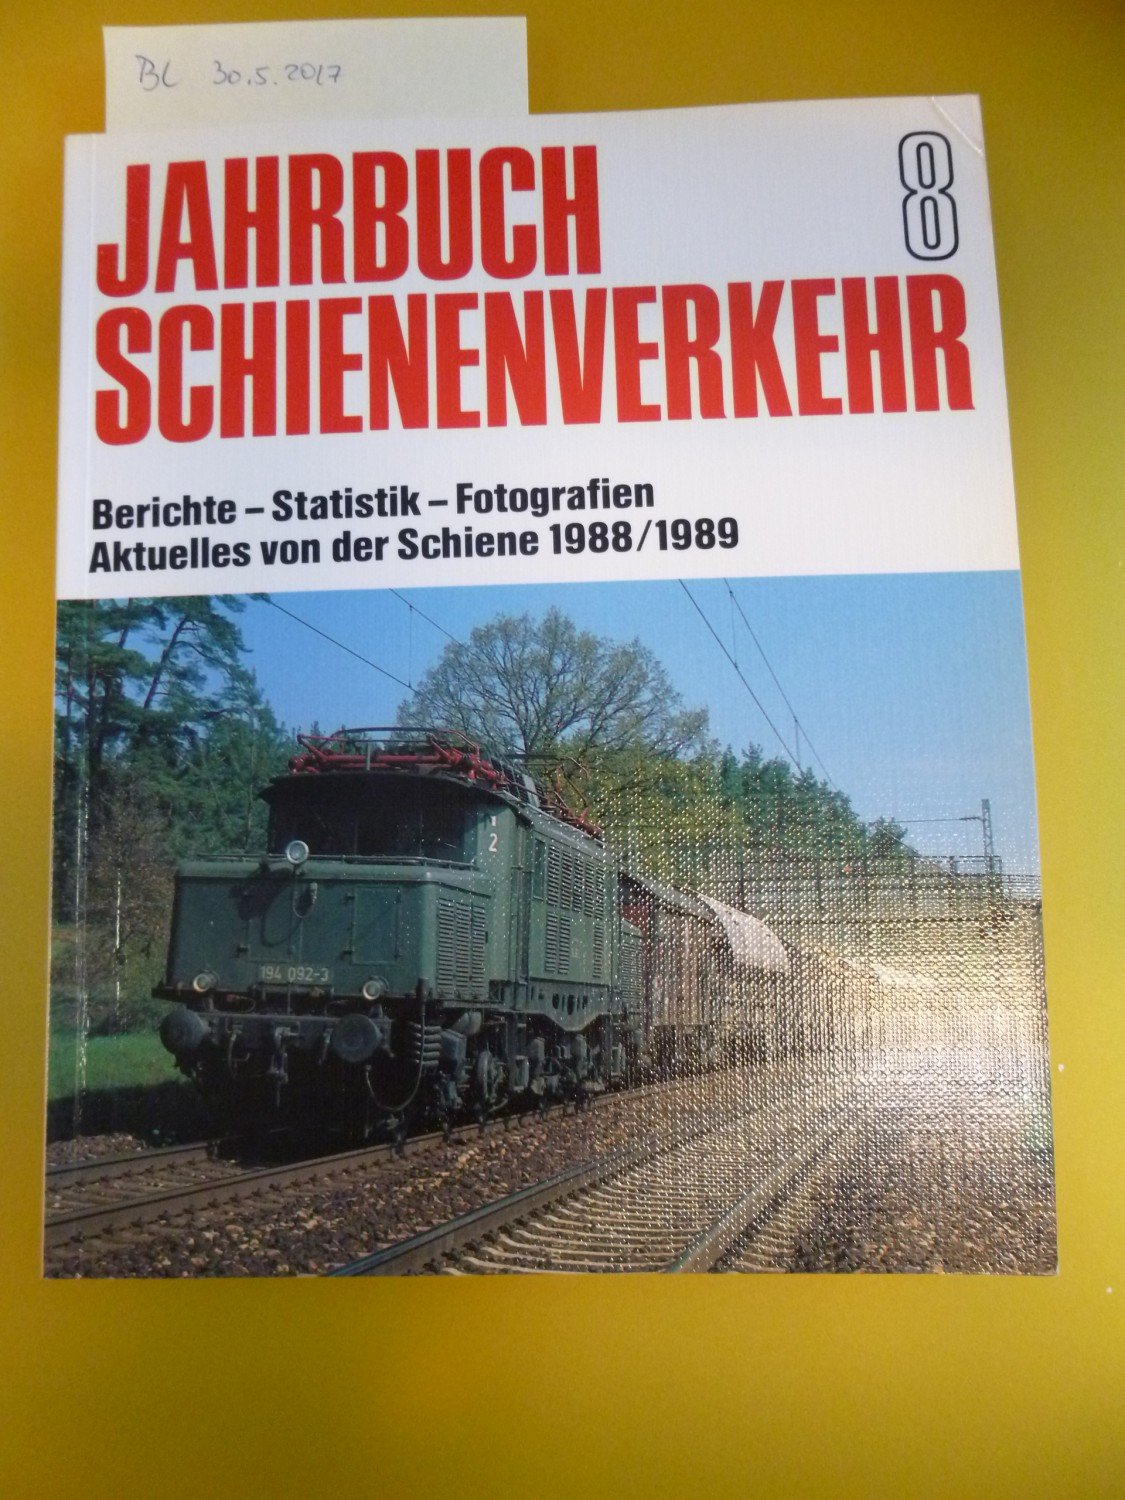 Entlang der Schiene von Chemnitz nach Wechselburg Chemnitztal Eisenbahn Buch 